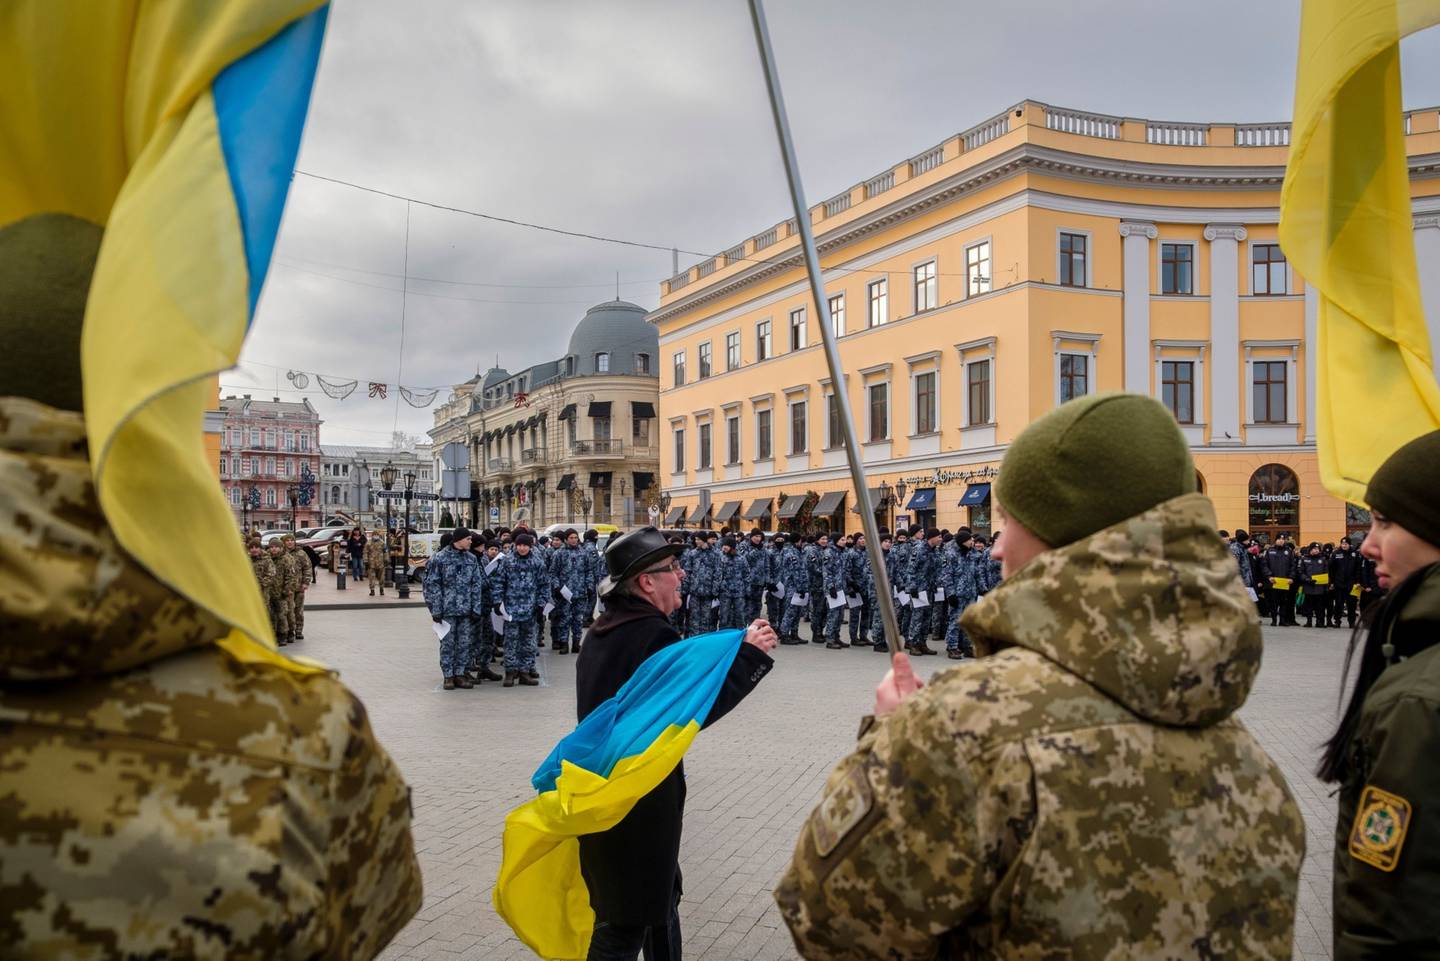 Un miembro del público ondea una bandera de Ucrania en un mitin al que asistieron soldados y policías en Odessa, Ucrania, el sábado 22 de enero de 2022.dfd